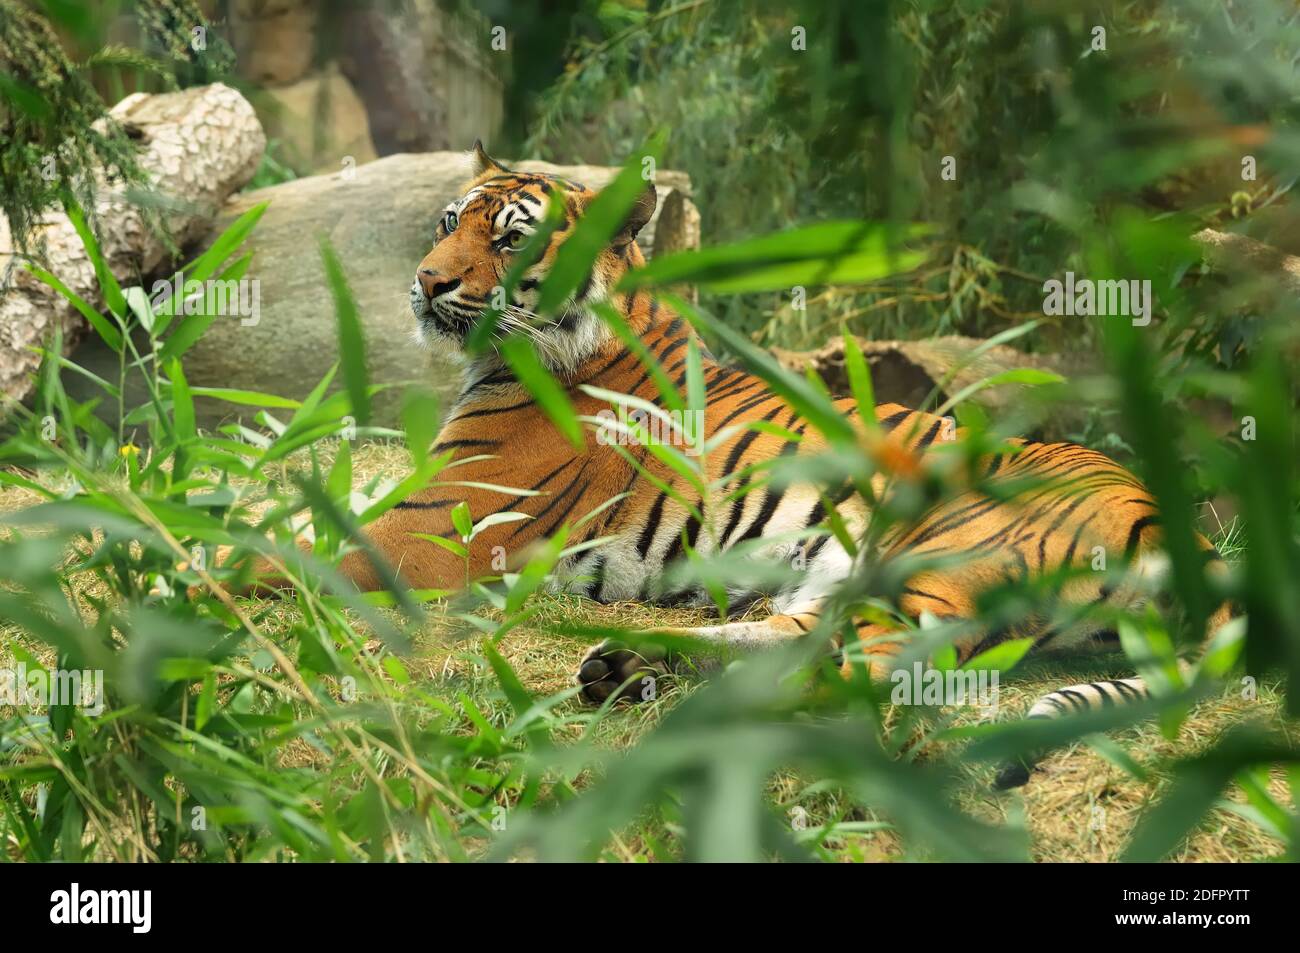 Grand chat, le tigre de Sumatran est la population de Panthera tigris sondaica dans l'île indonésienne de Sumatra, classée comme étant en danger critique d'extinction sur le rouge de l'UICN Banque D'Images